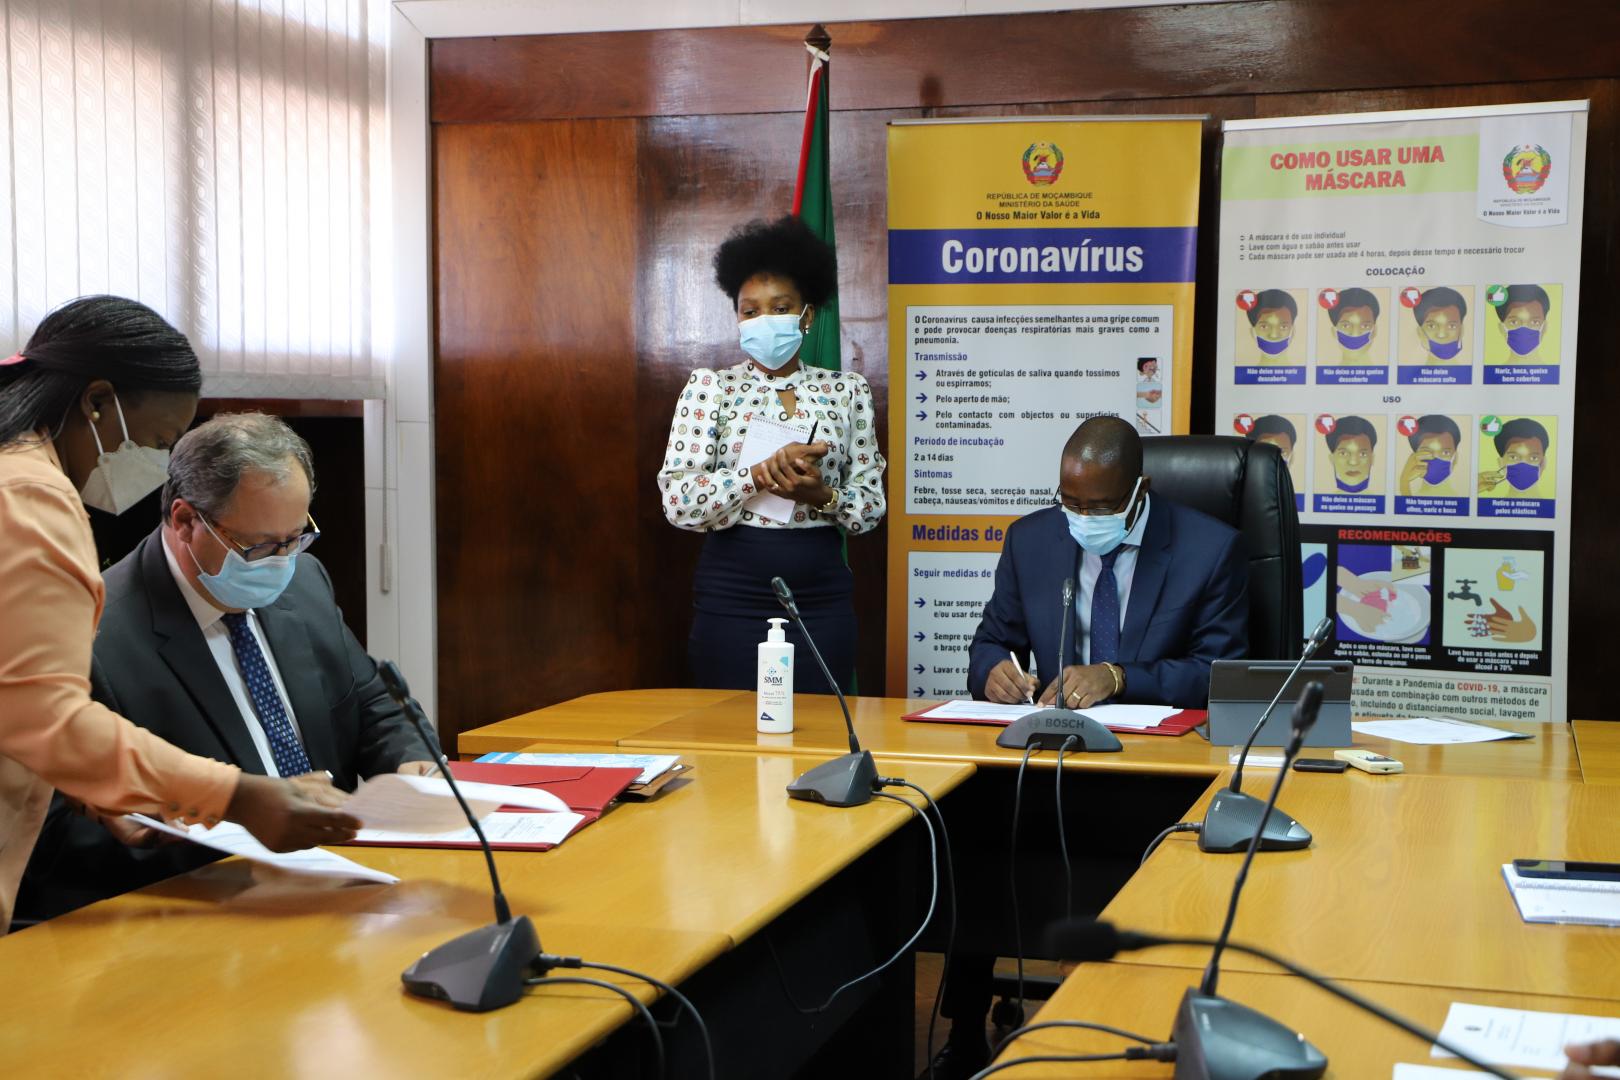 Dr. Severin Representante da OMS em Moçambique e Dr. Armindo Tiago Ministro da Saúde assinando o Plano .